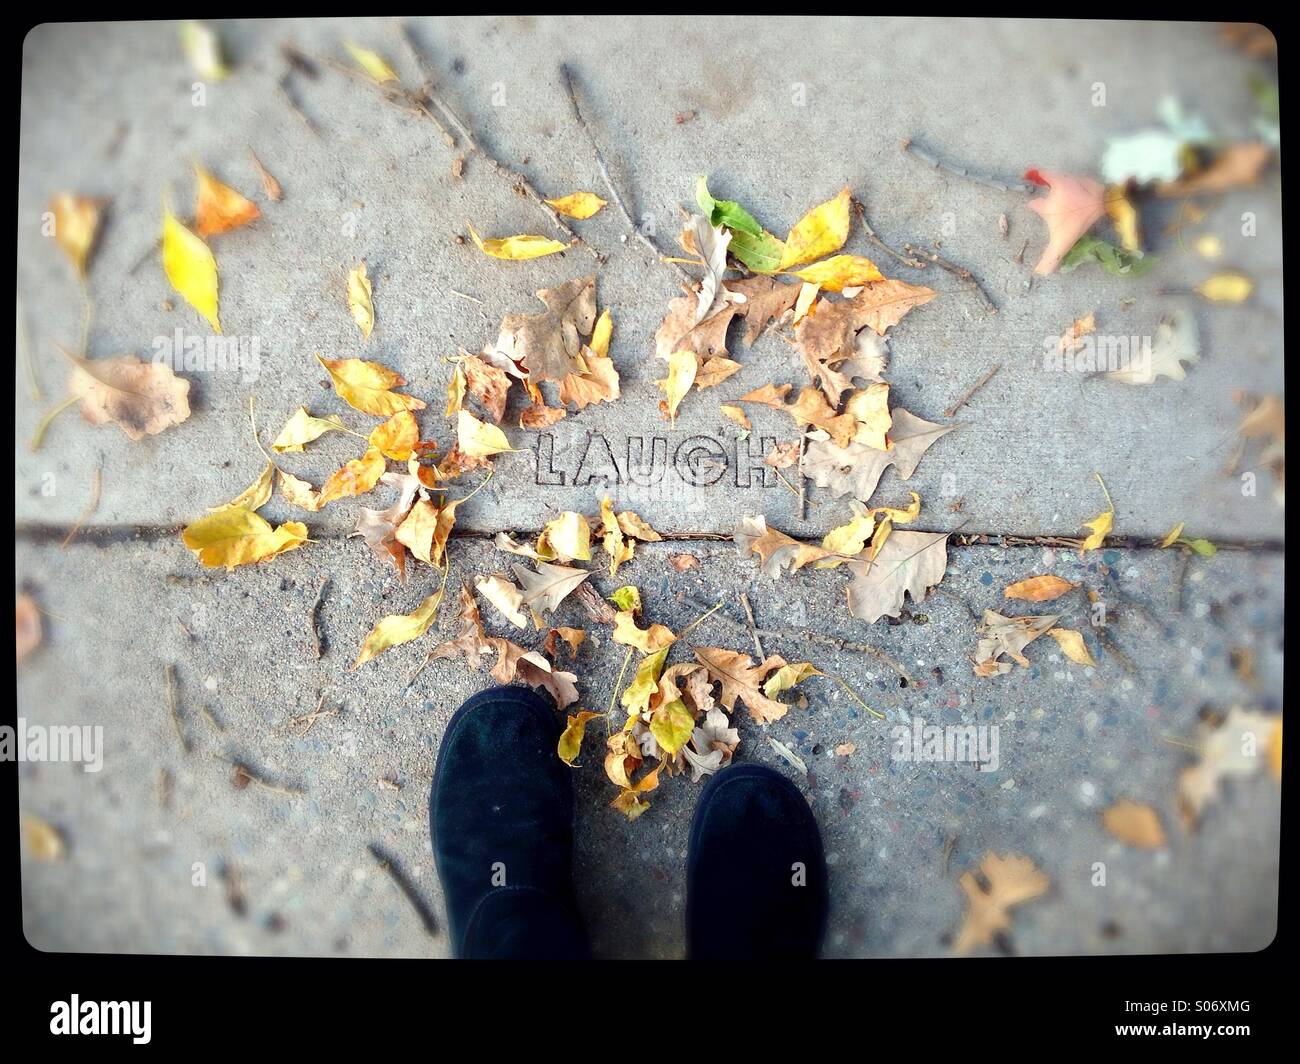 Eine Person, die Füße stehen neben dem Wort "Lachen" geschnitzt in einen Bürgersteig. Stockfoto